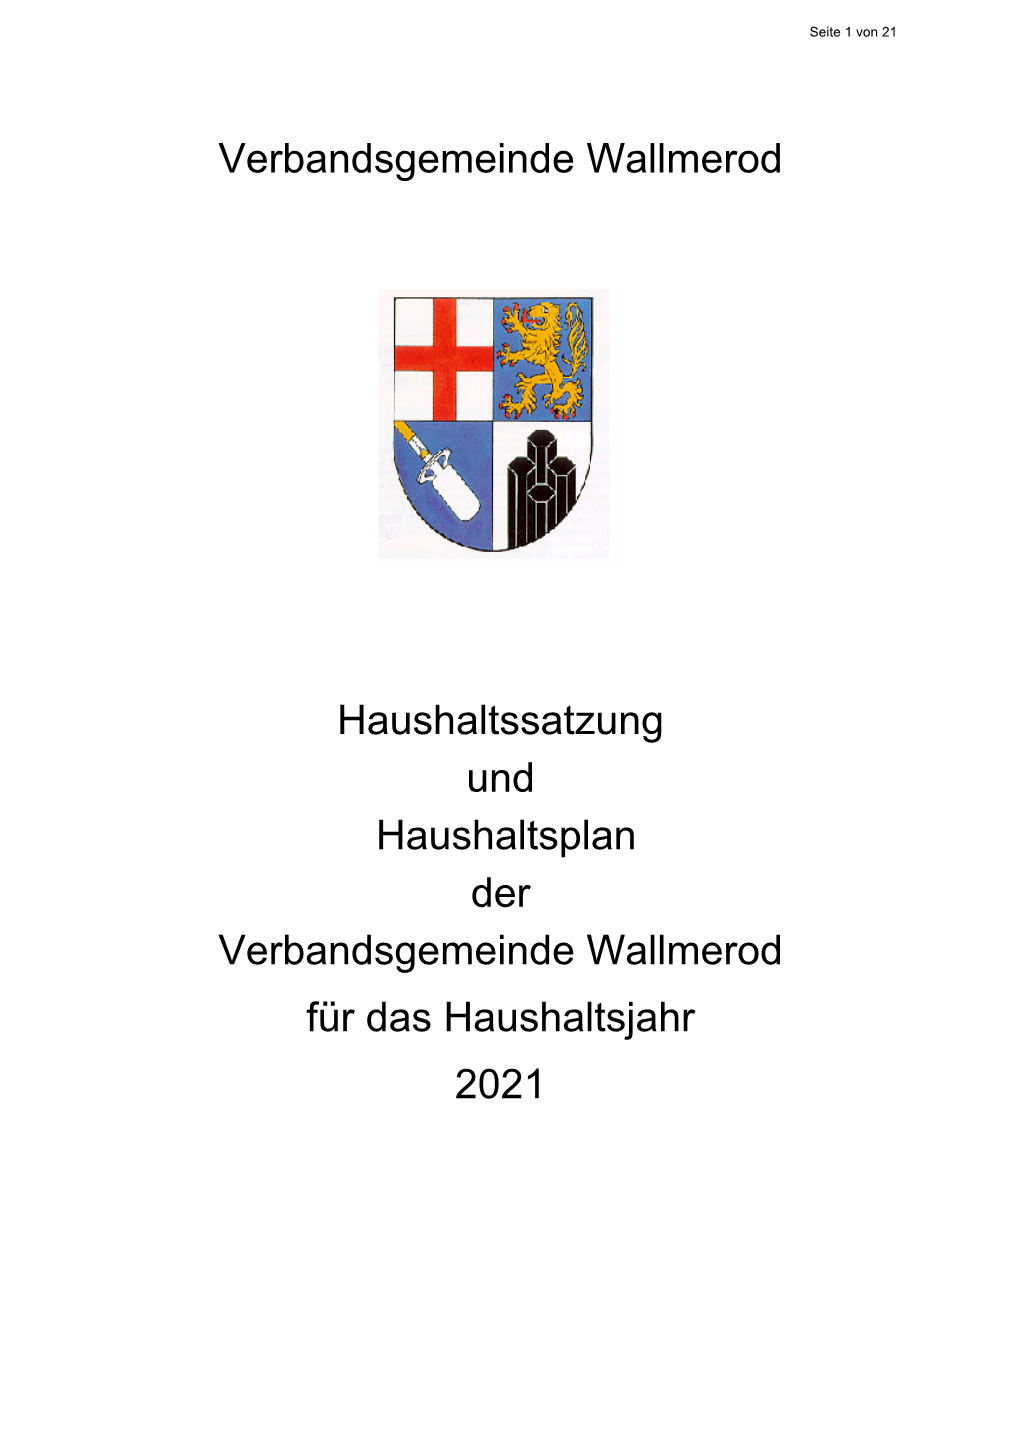 2021 HH-Satzung Und -Planung.Pdf